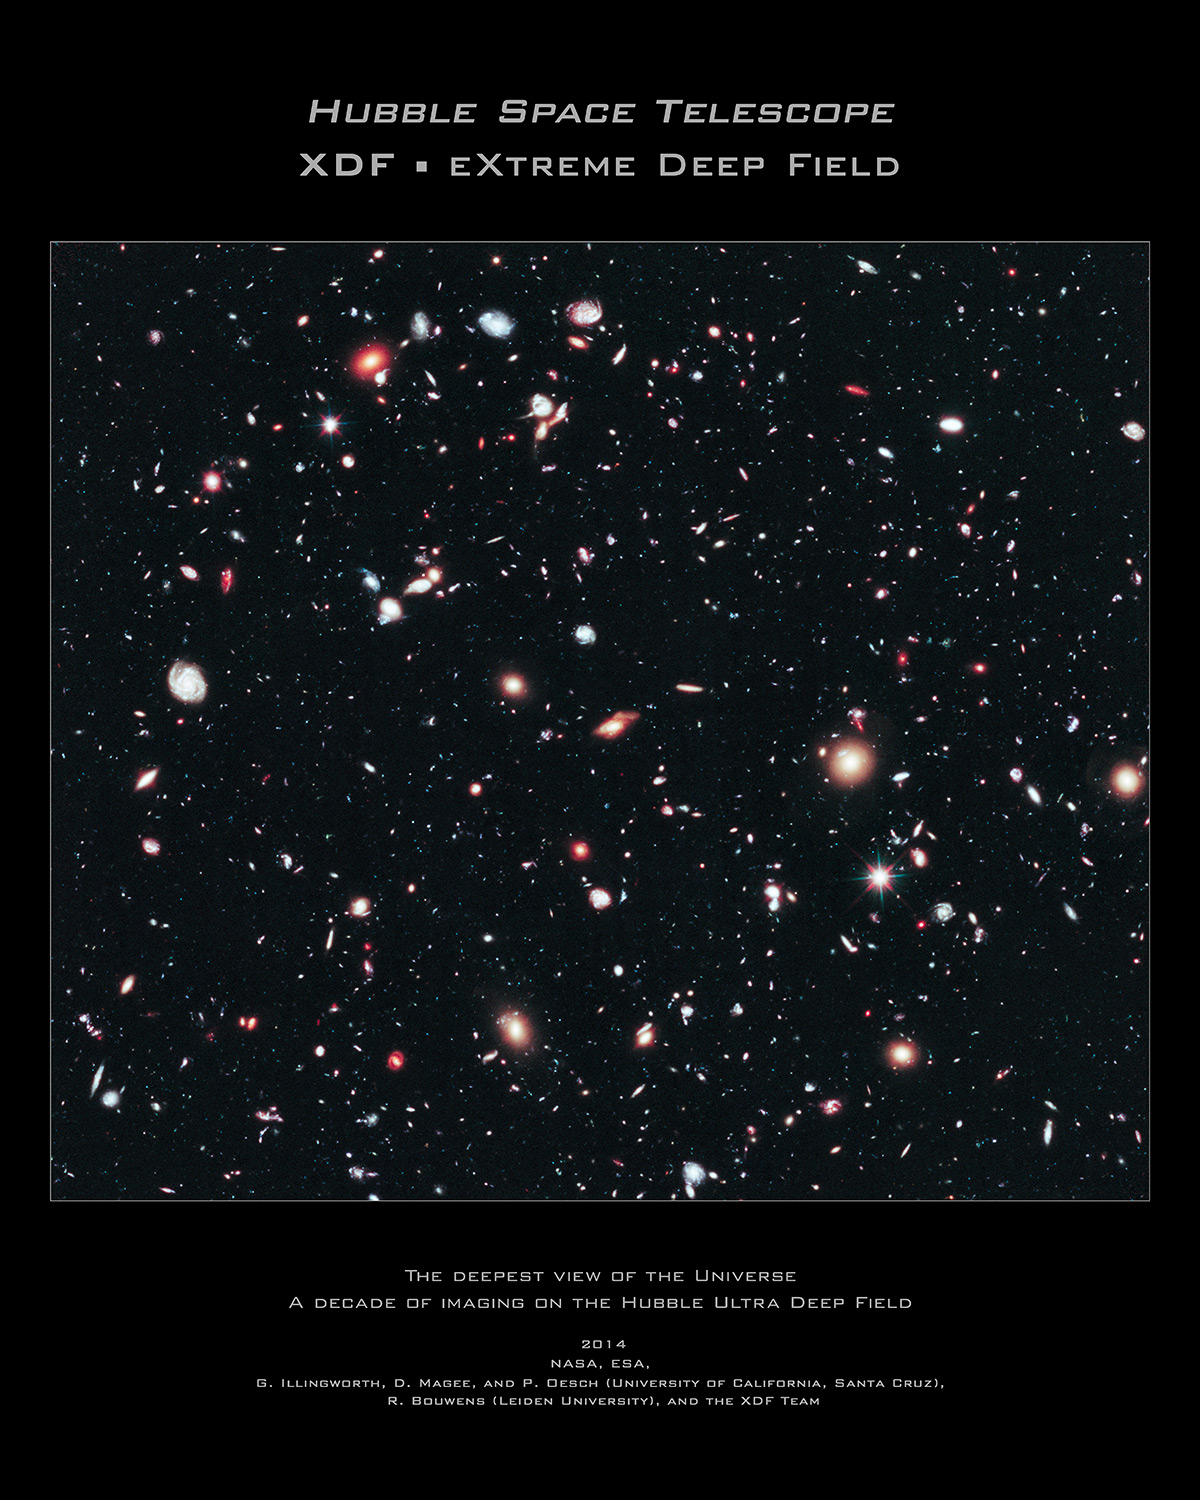 Hubble's XDF